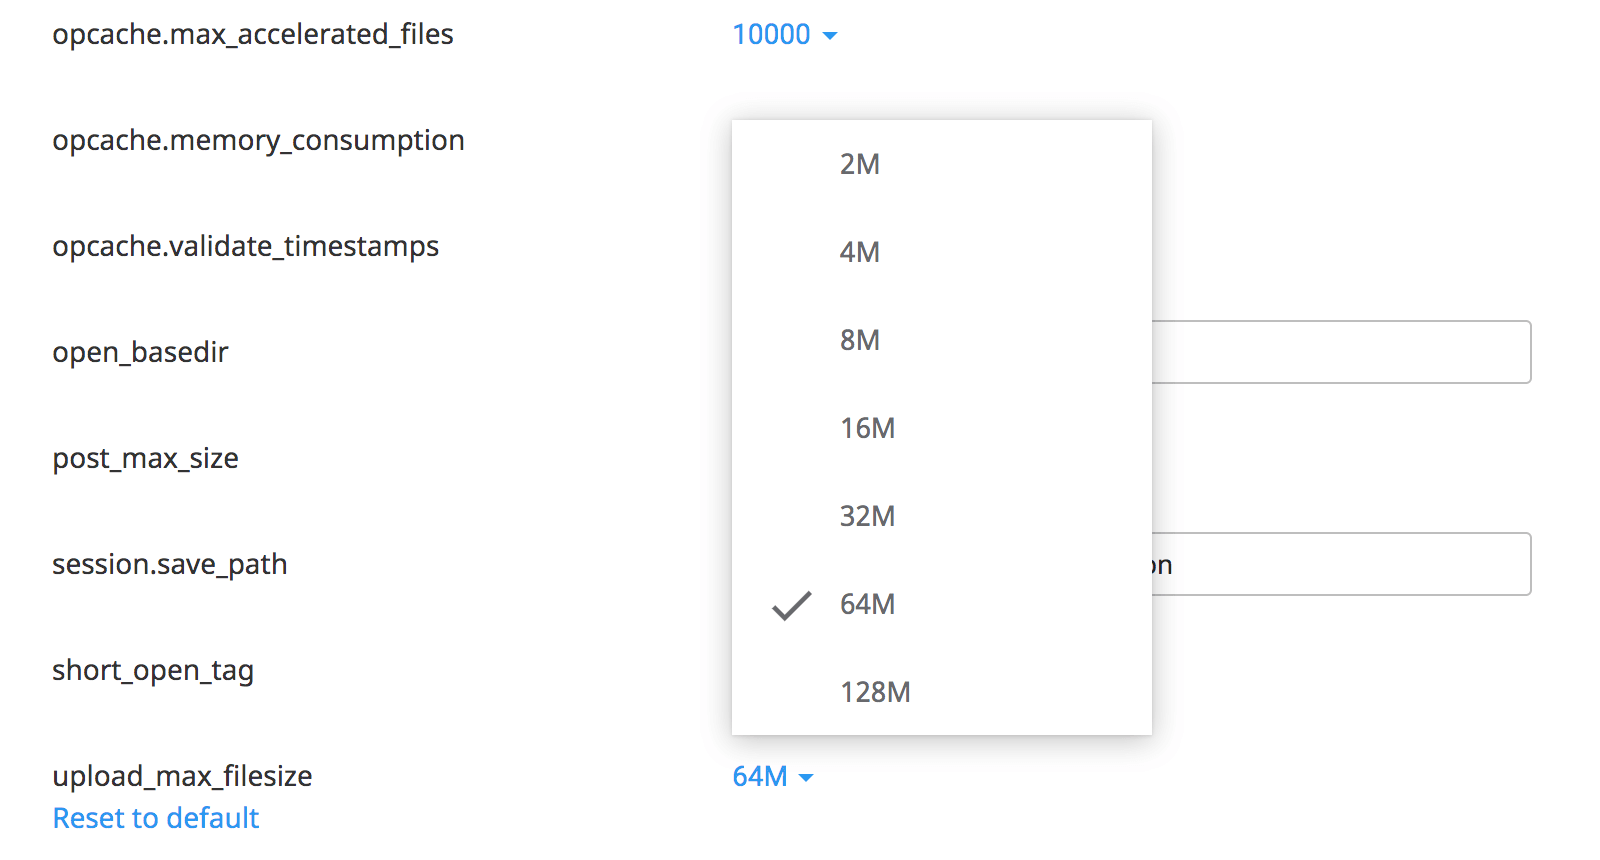 Klik op de waarde achter 'upload_max_filesize' en selecteer de gewenste limiet.